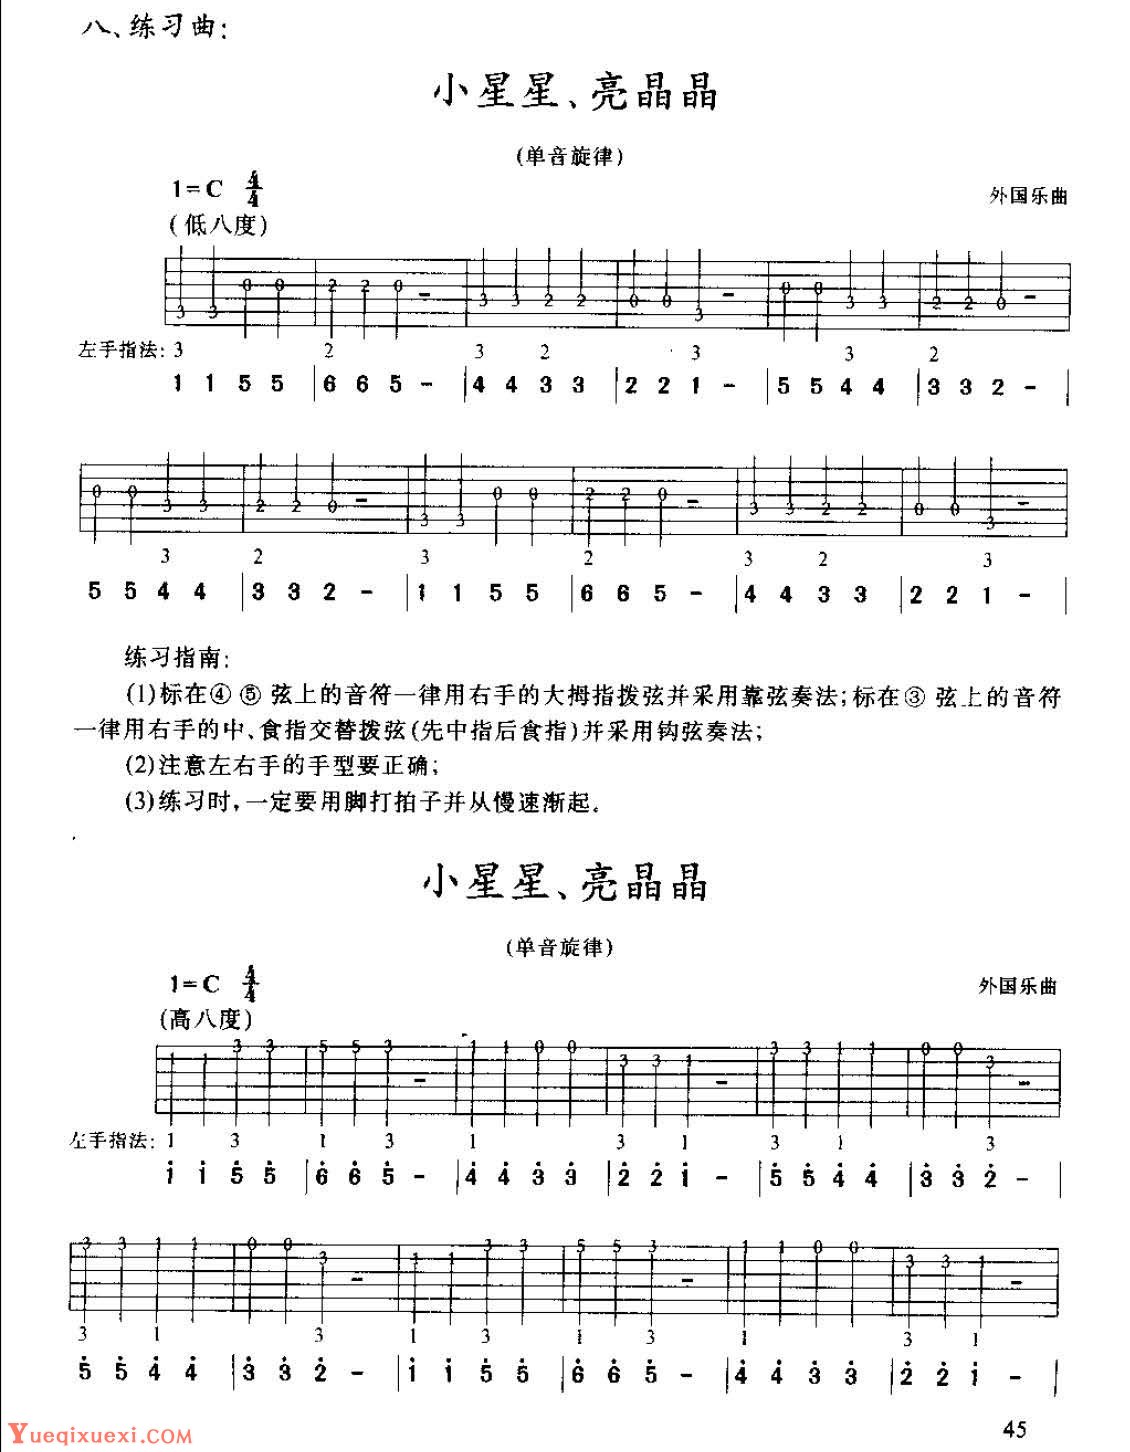 C大调与A小调的和弦指法及功能特性